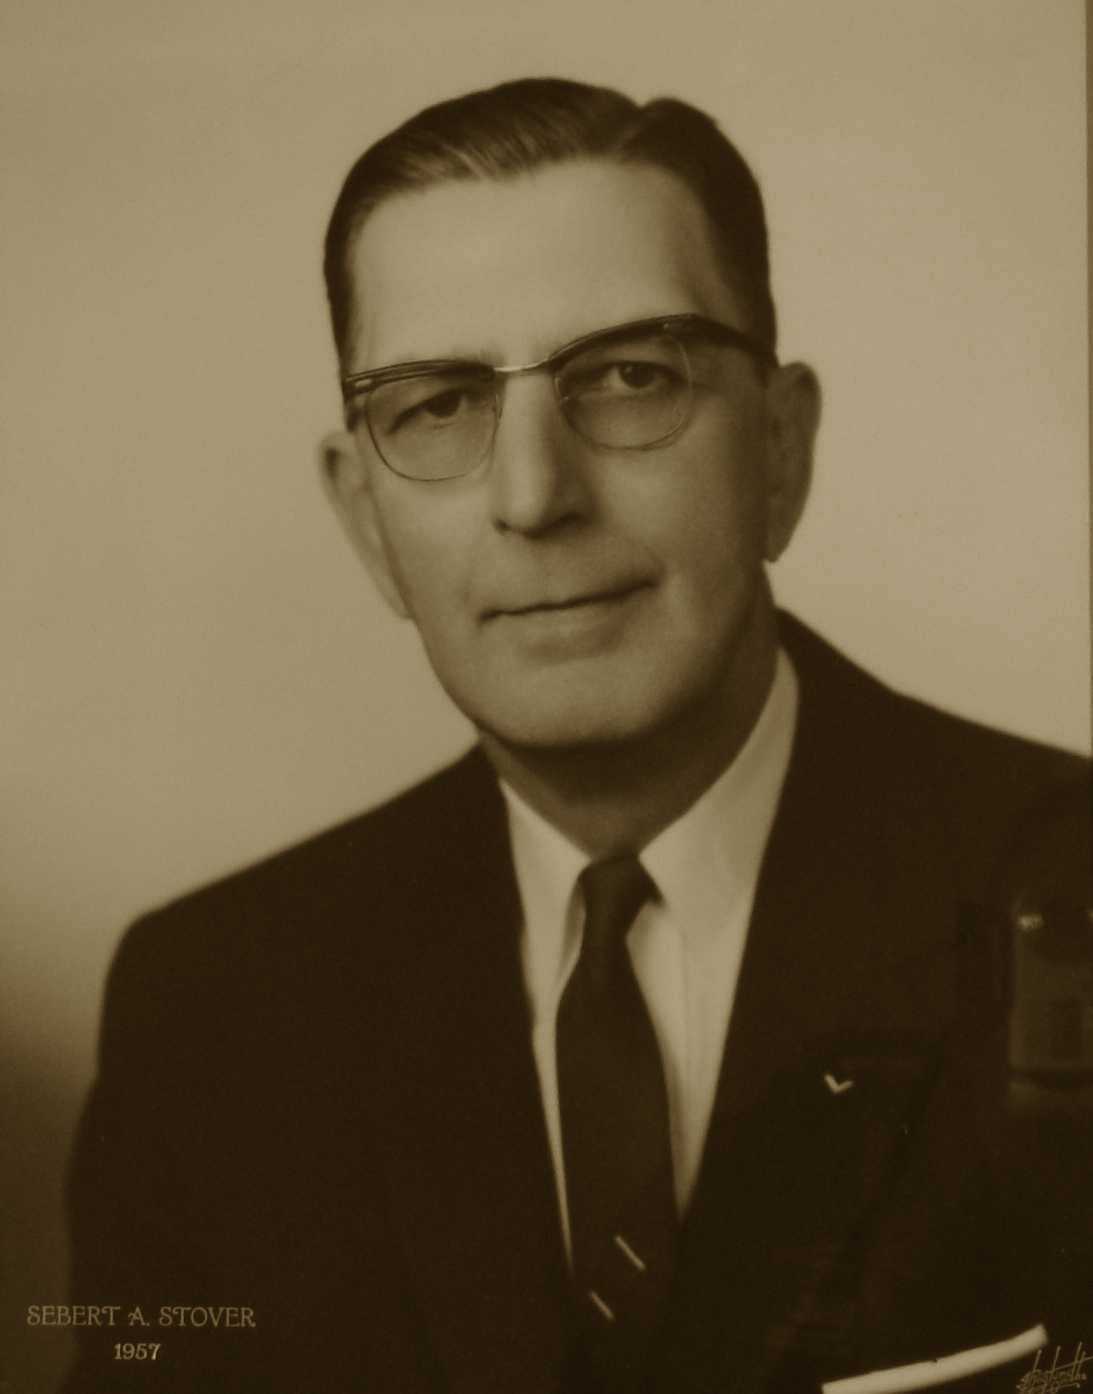 Sebert A. Stover, 1957